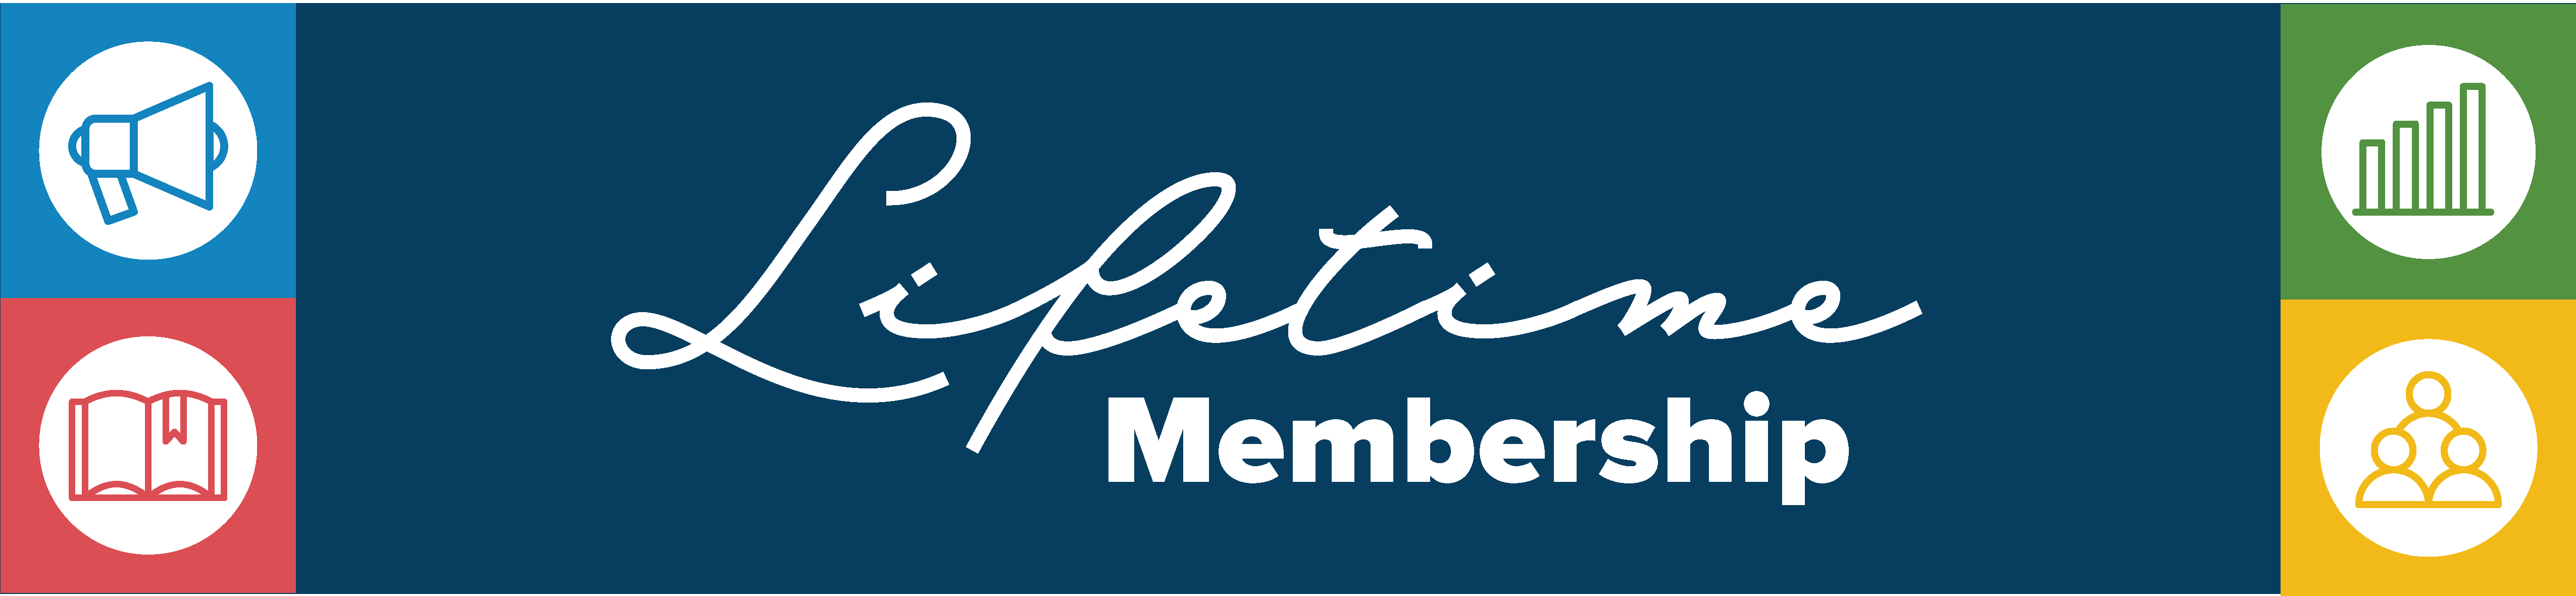 web banner_Lifetime membership certificate copy_Lifetime membership certificate copy